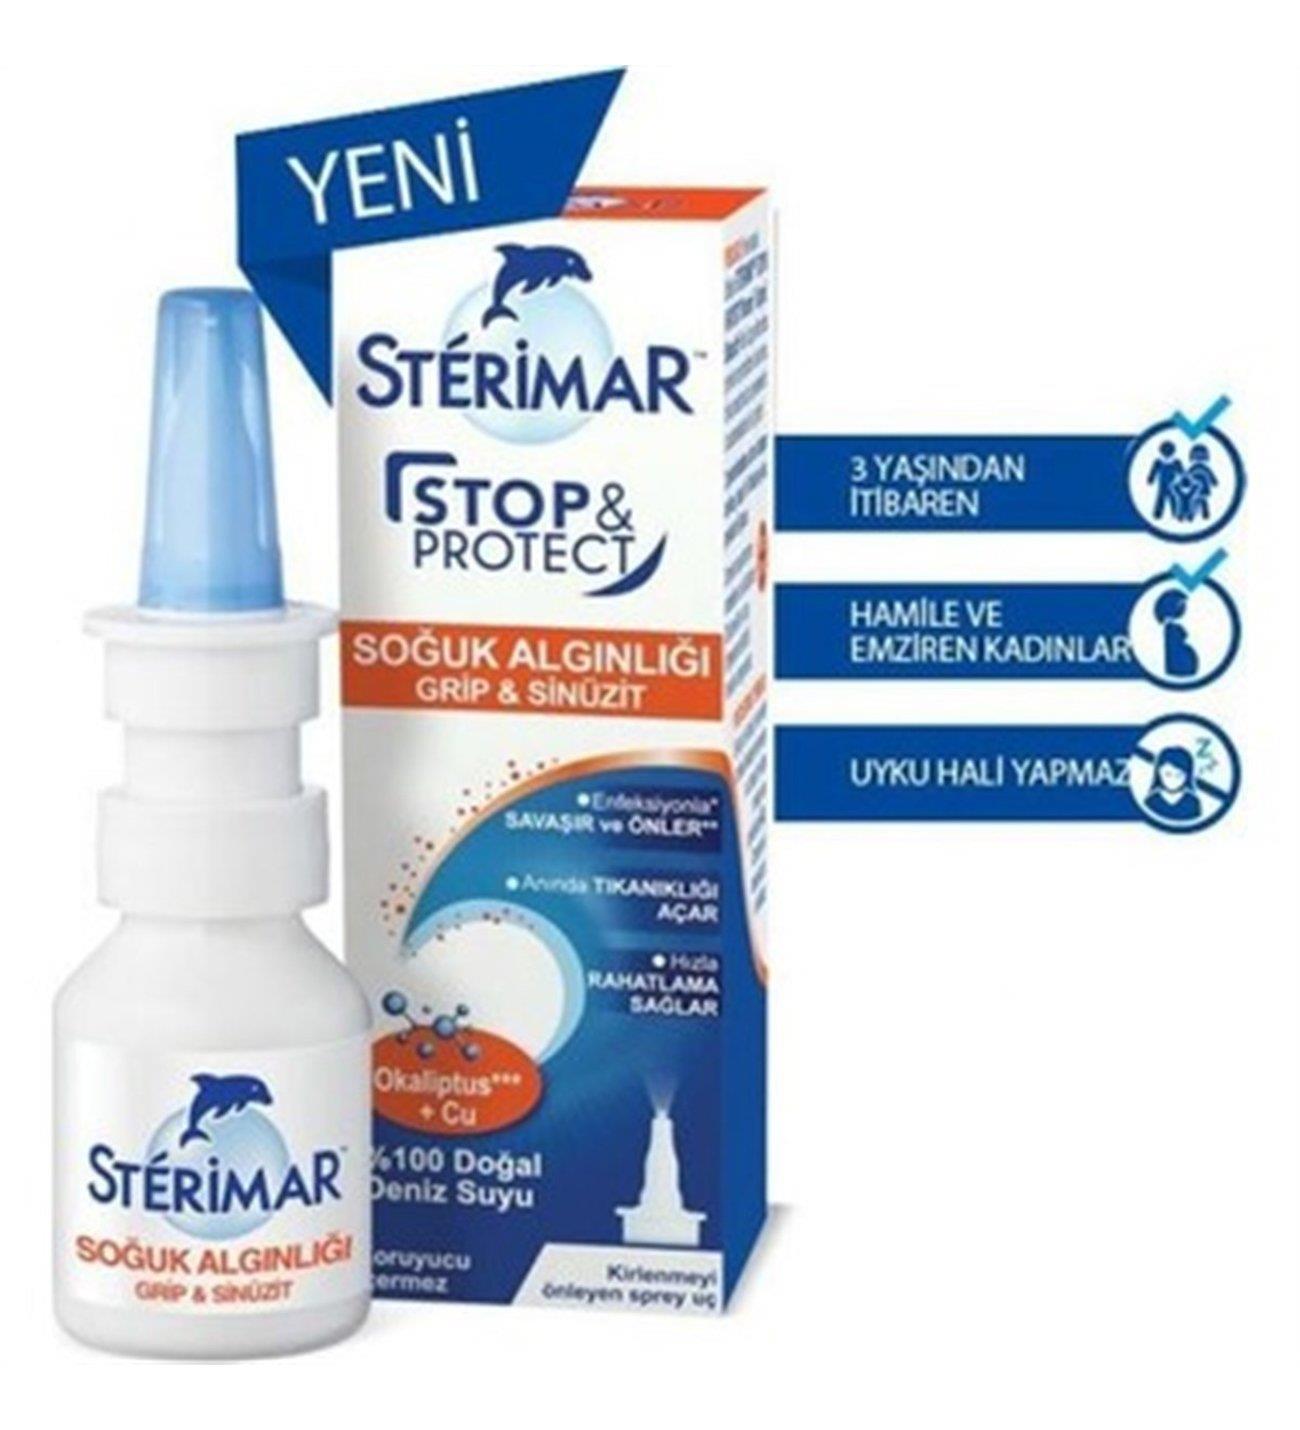 Sterimar Stop & Protect Soğuk Algınlığı Burun Spreyi 20 ml